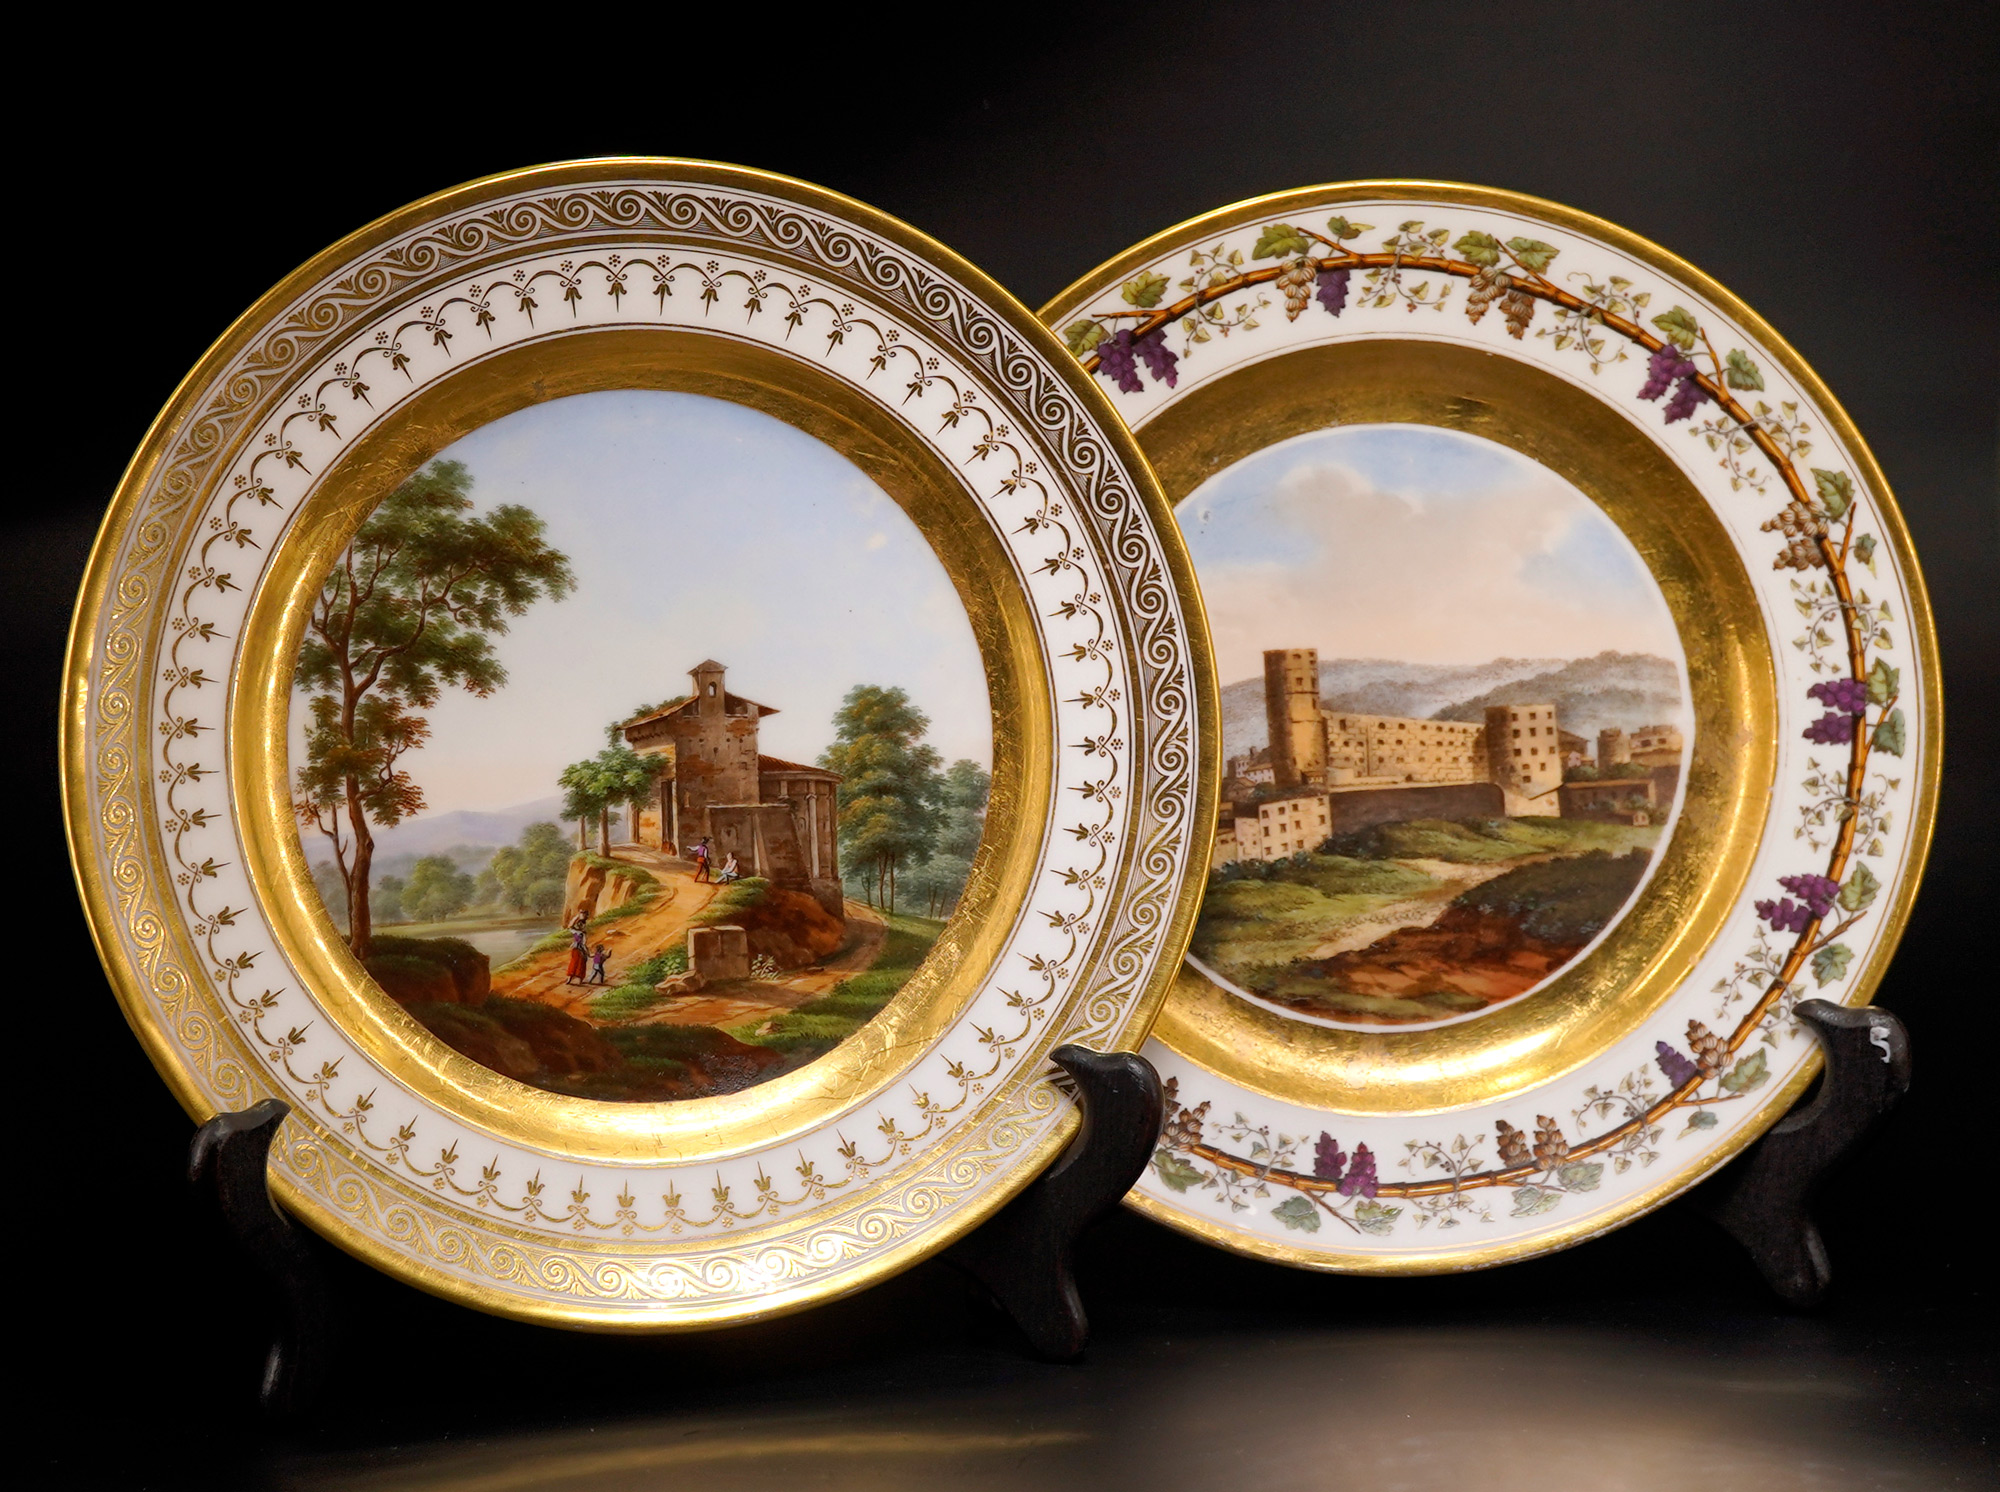 Paris Porcelain plates, c.1810-20